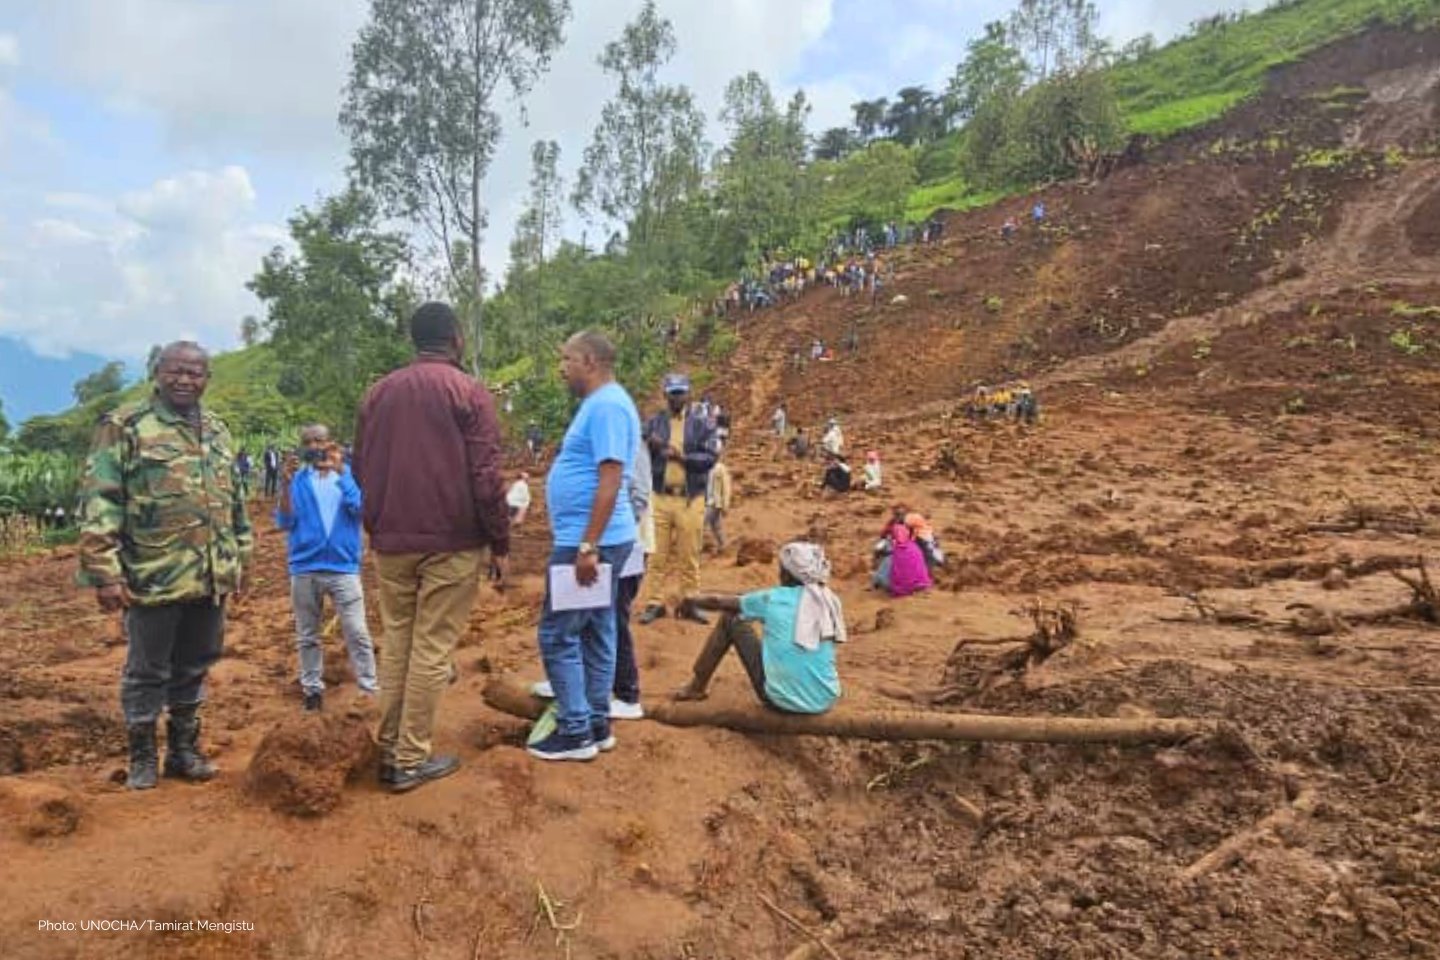 Etiópia: mortes por deslizamento de terra no sul podem chegar a 500, diz ONU